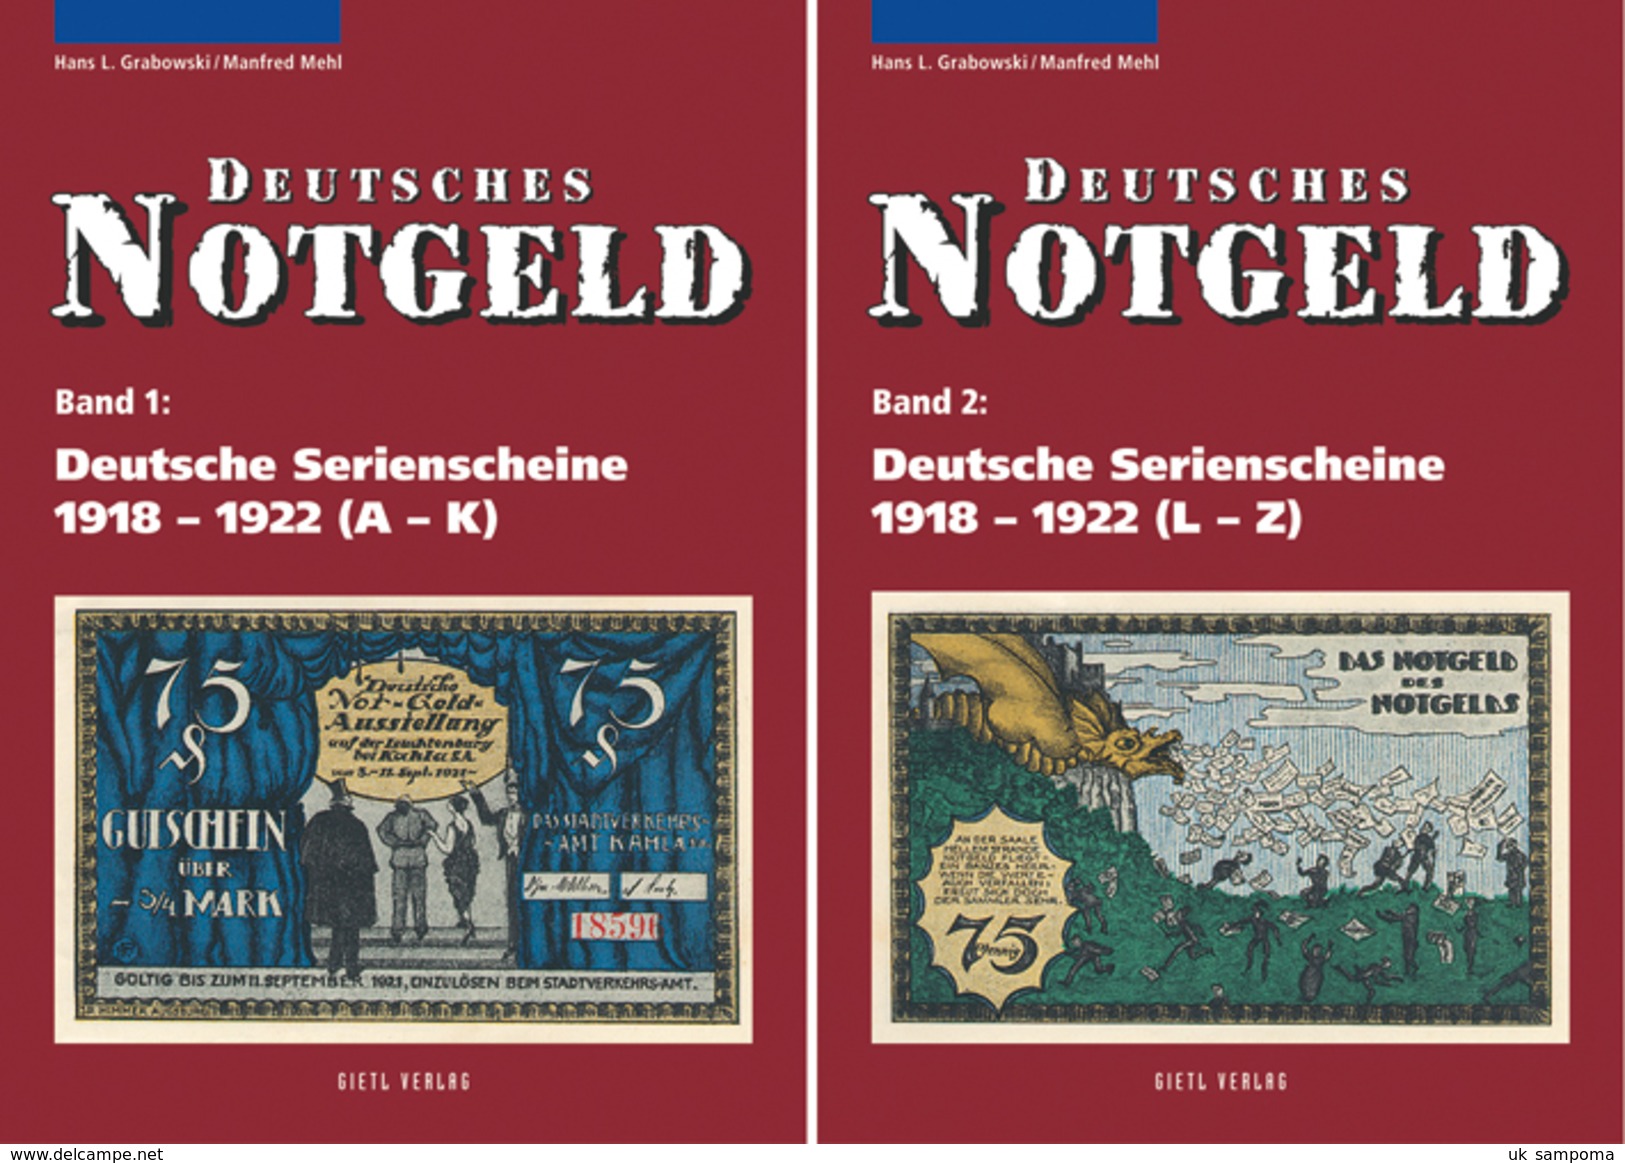 Deutsches Notgeld Band 1+2: Deutsche Serienscheine 1918 - 1922 - Blankoblätter